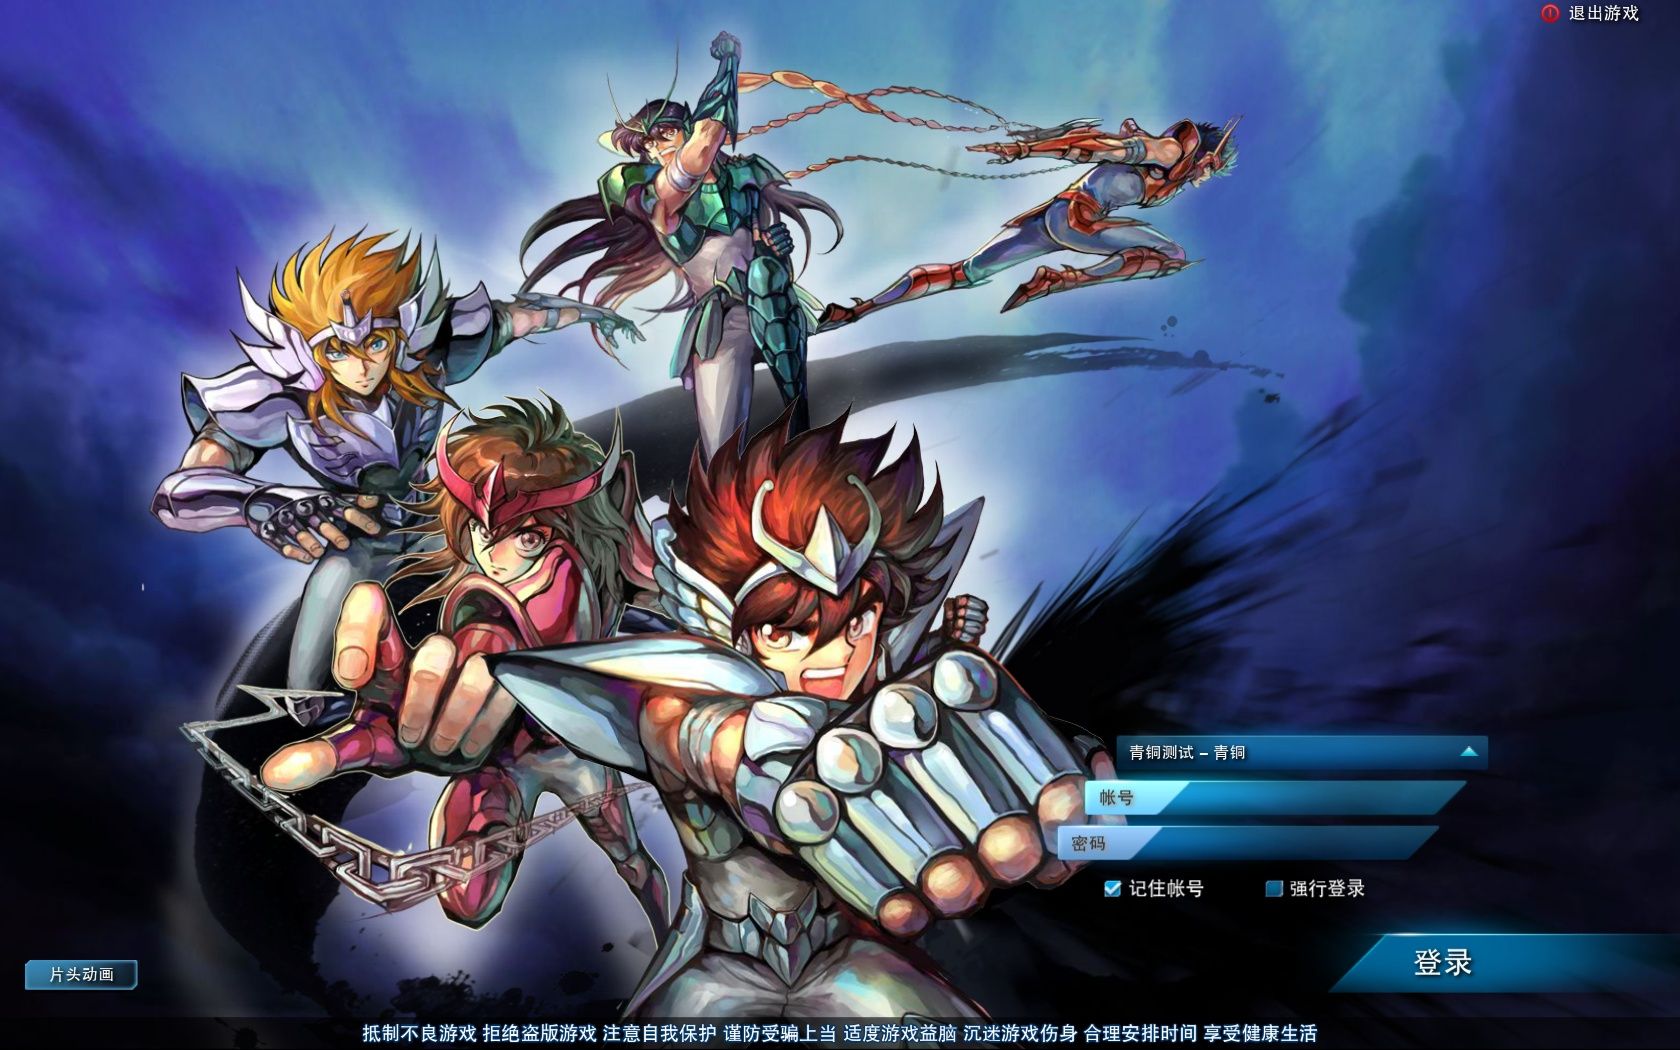 Saint Seiya Online: jogo será descontinuado no final do ano na China! - Os  Cavaleiros do Zodíaco - CavZodiaco.com.br